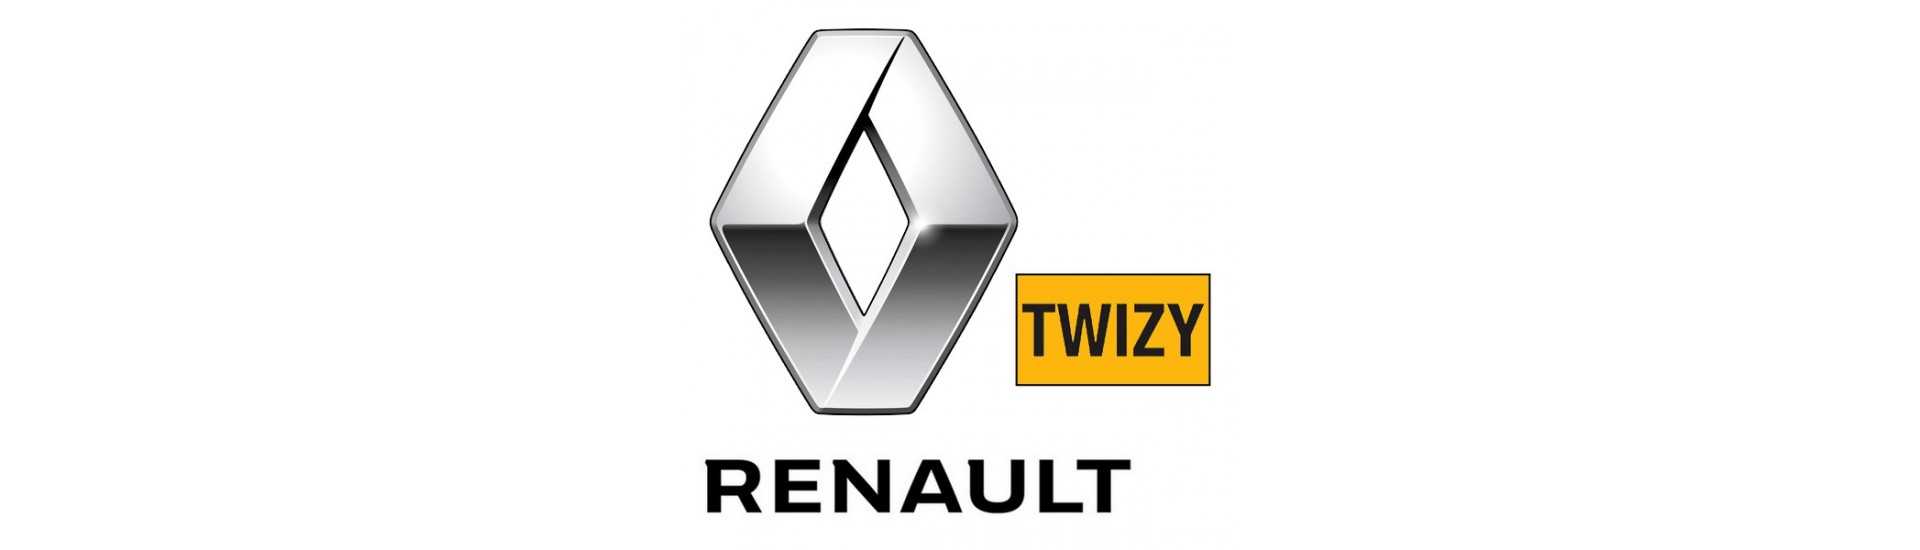 Fahre zum besten Preis für Auto ohne Lizenz Renault Twizy